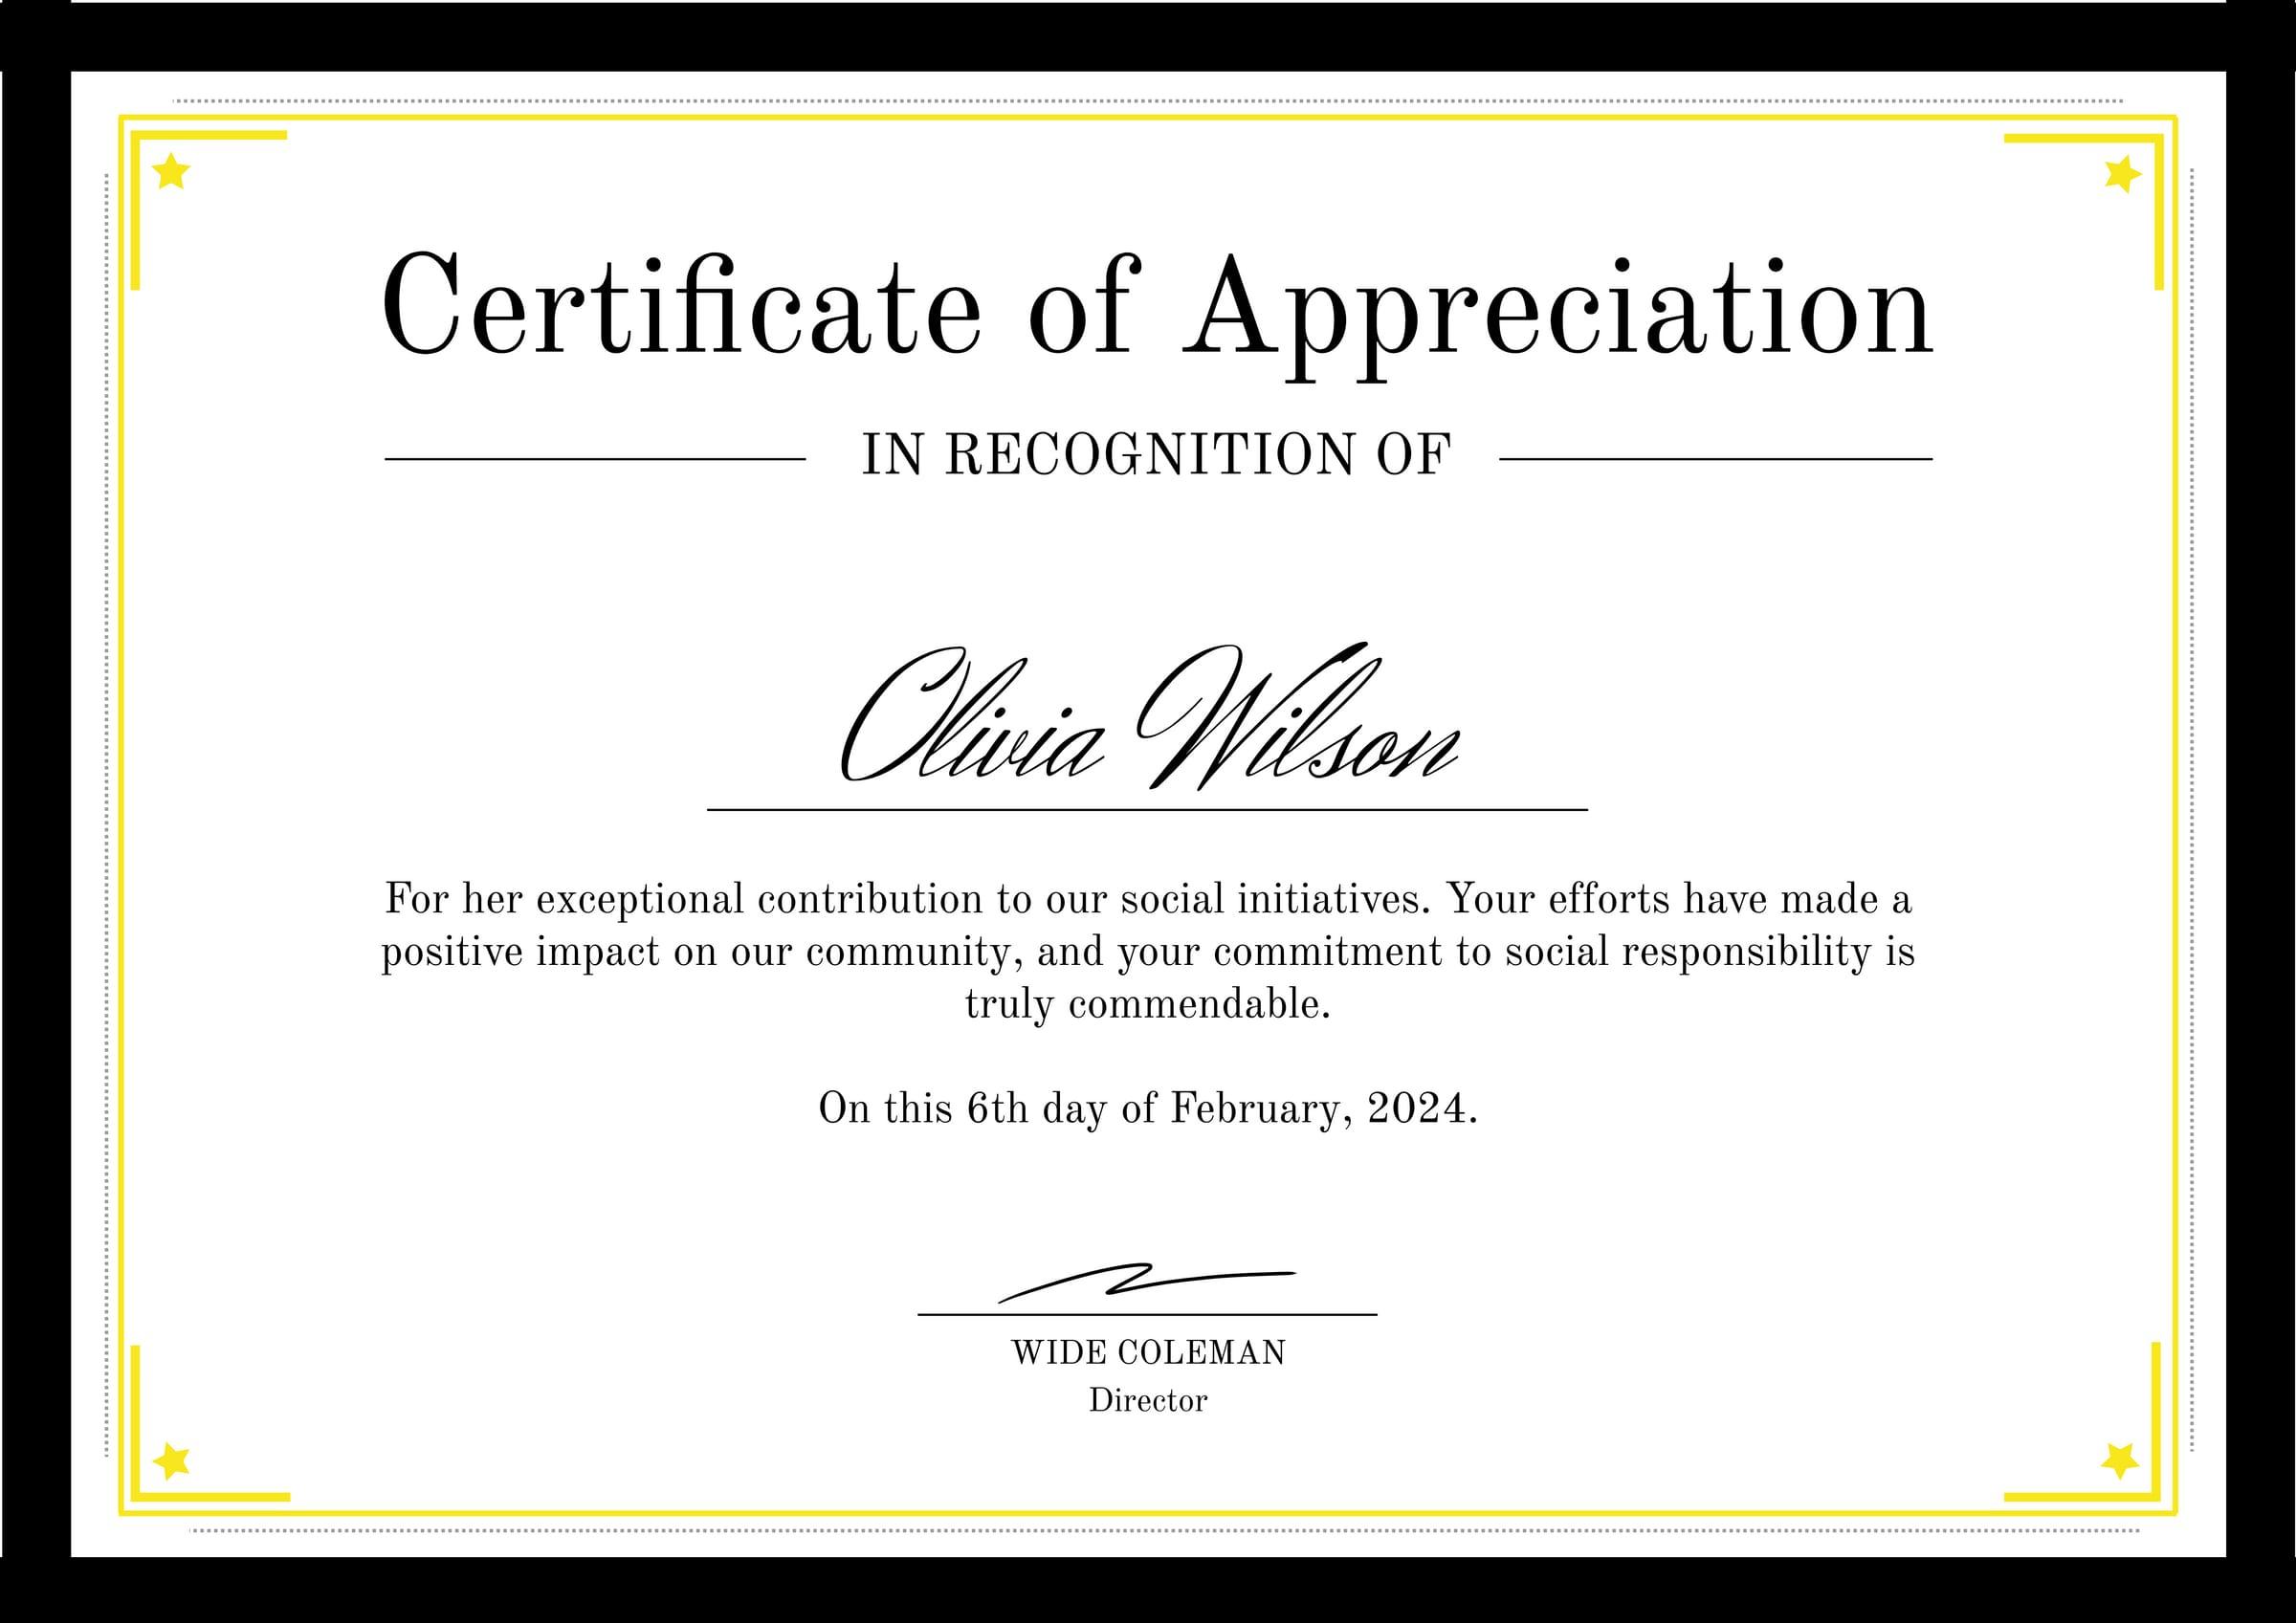 White Classic Bordered Certificate of Appreciation